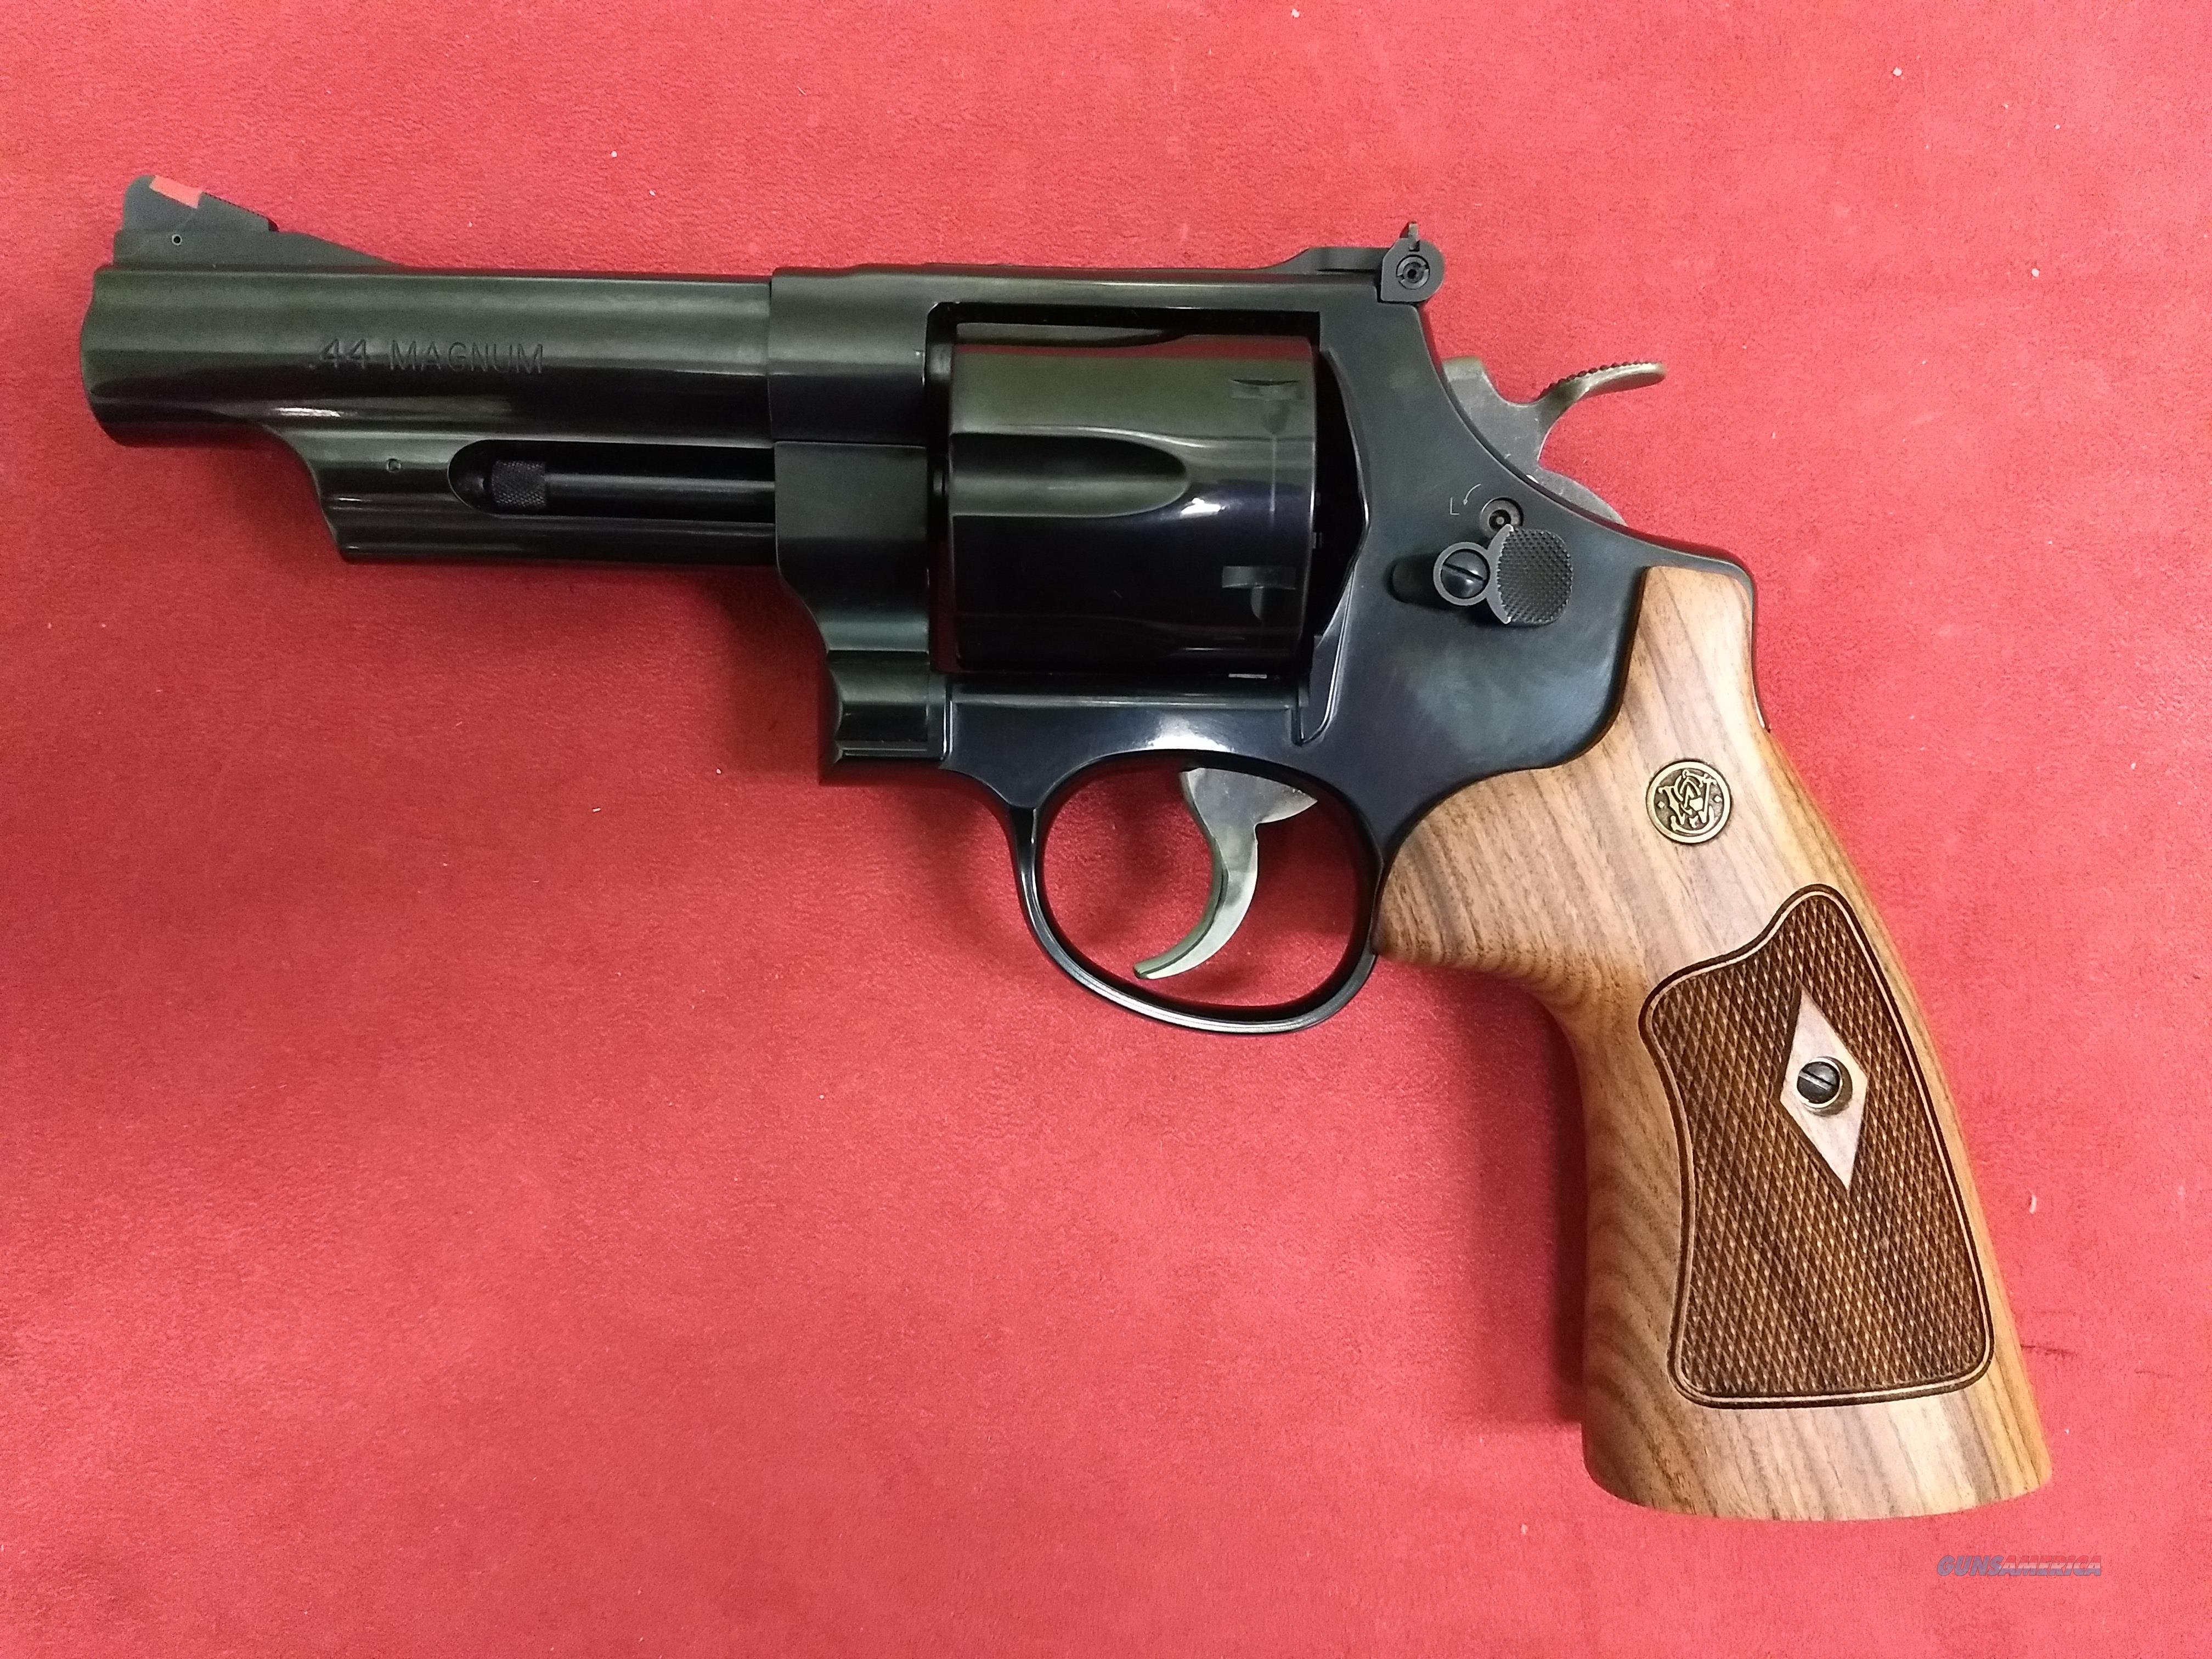 Smith & Wesson Model 29 Classic, .4... for sale at Gunsamerica.com ...